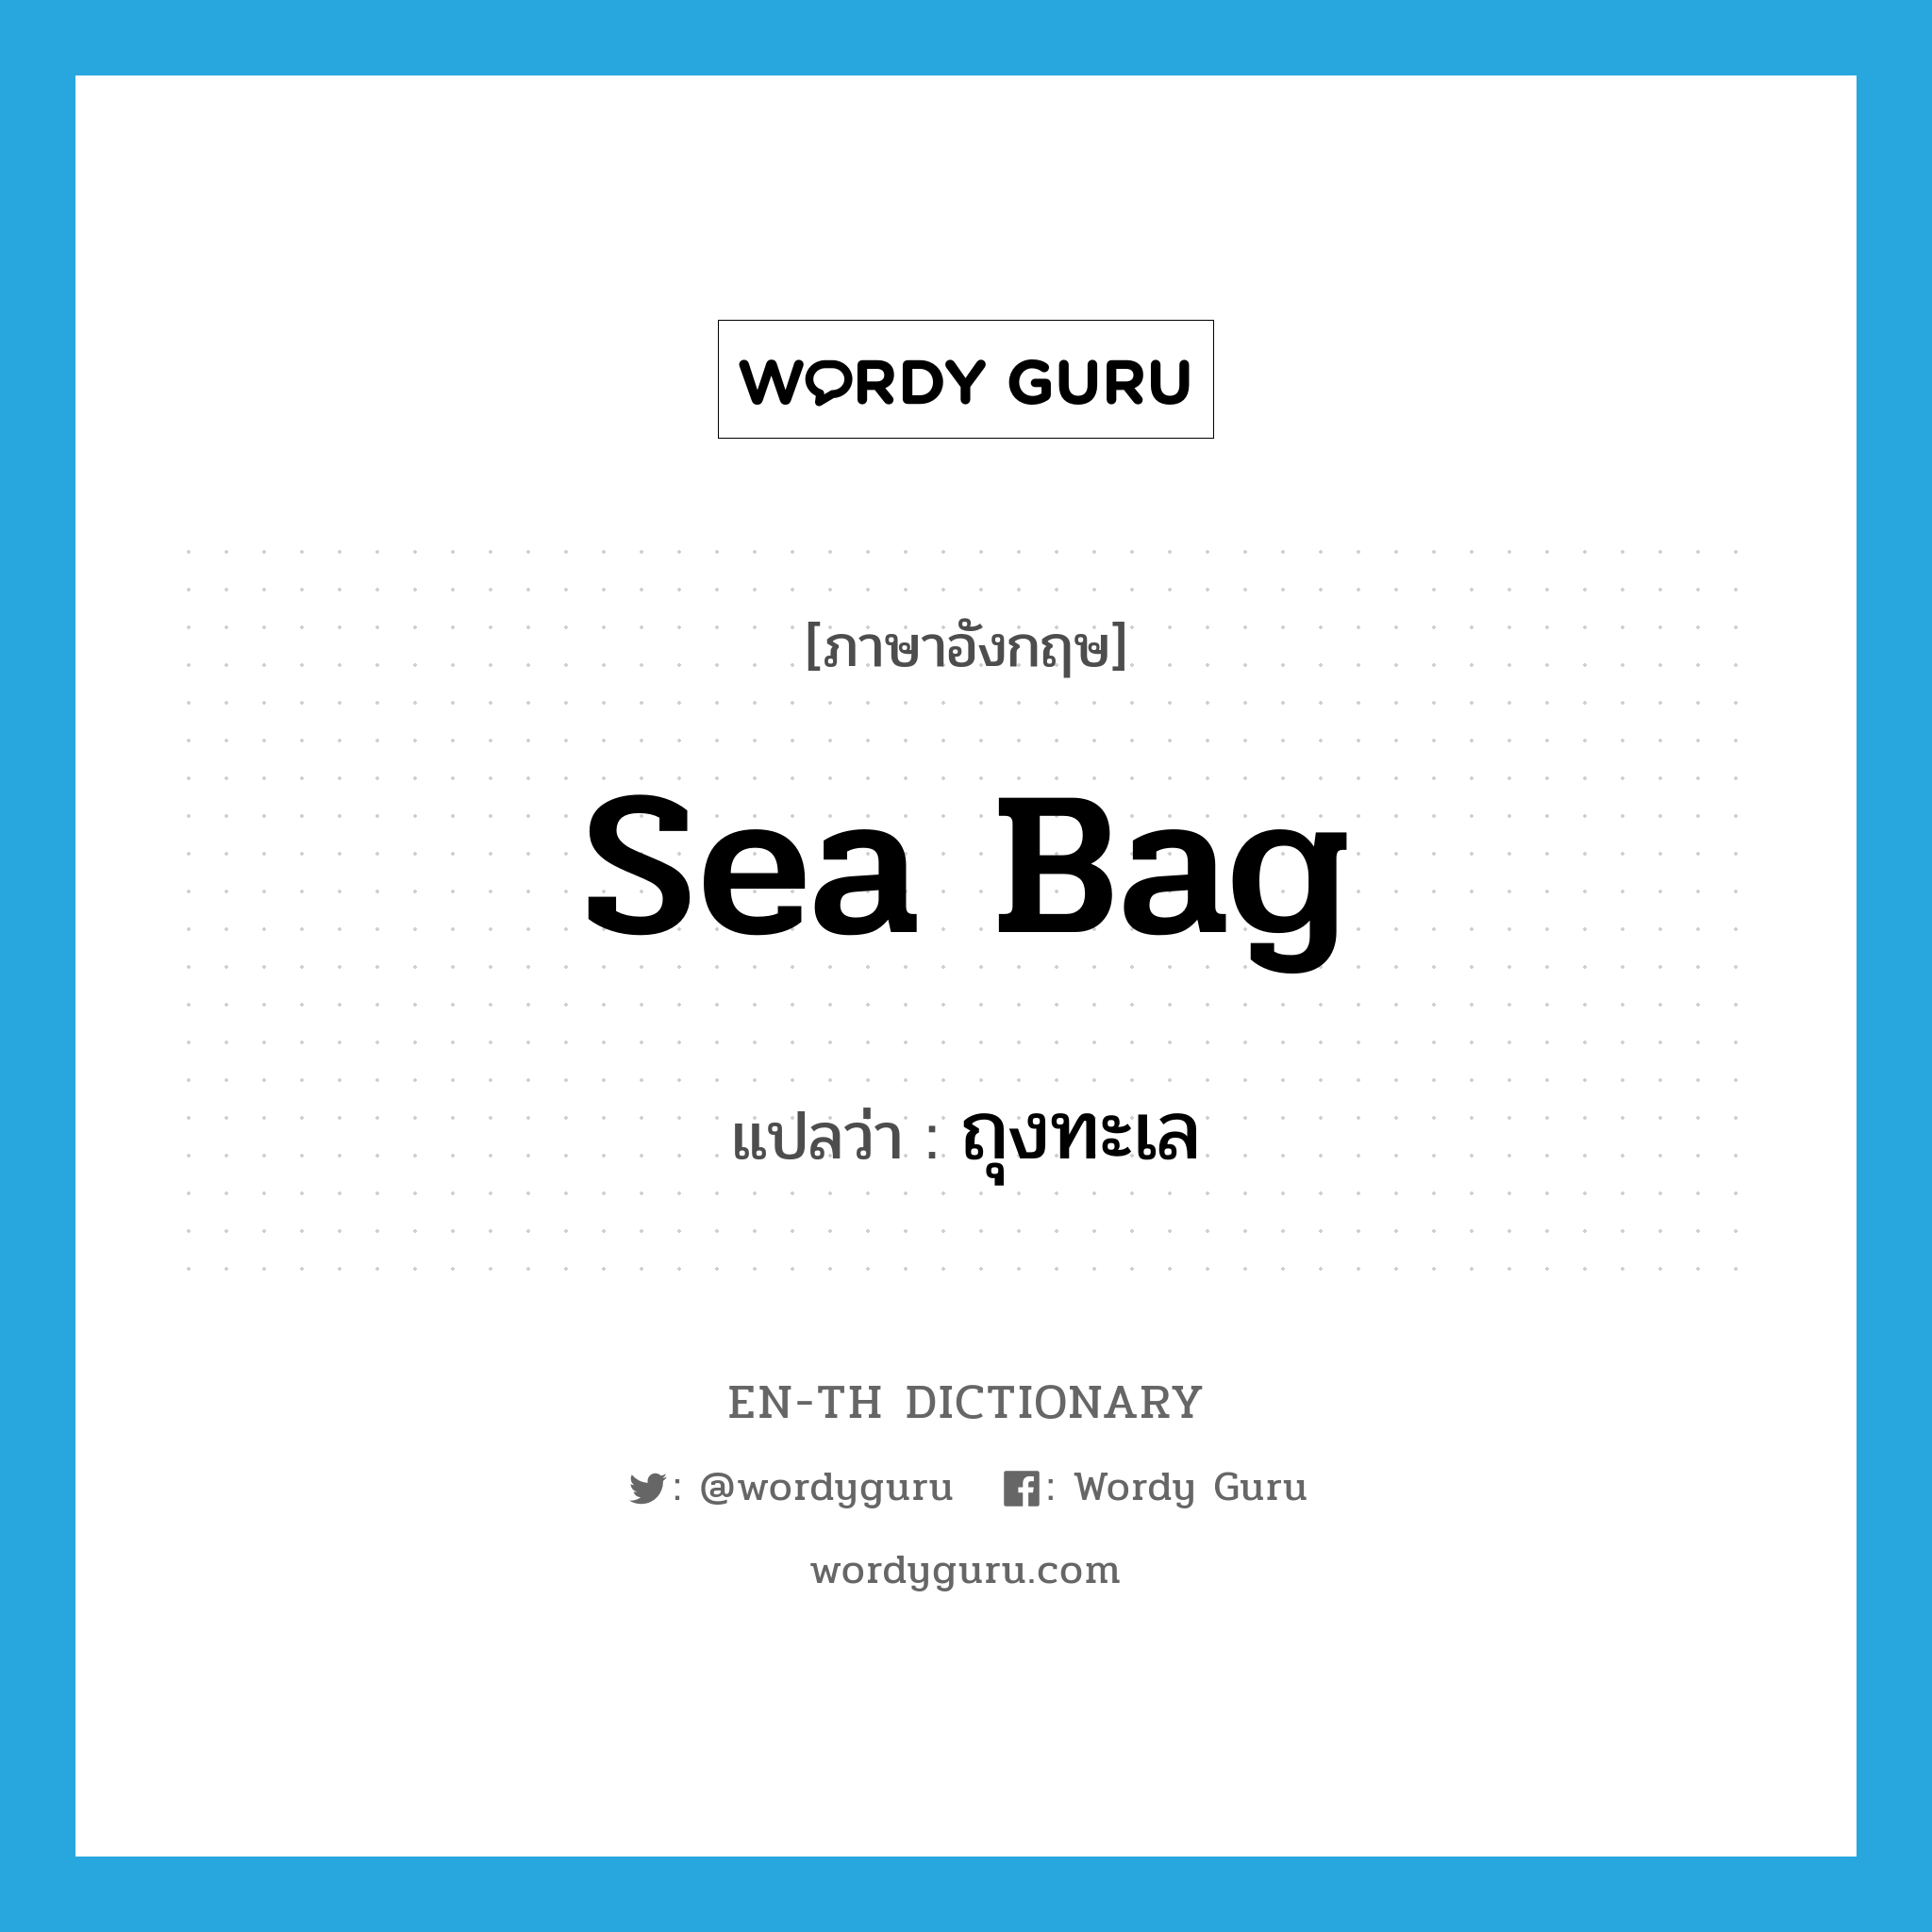 sea bag แปลว่า?, คำศัพท์ภาษาอังกฤษ sea bag แปลว่า ถุงทะเล ประเภท N หมวด N